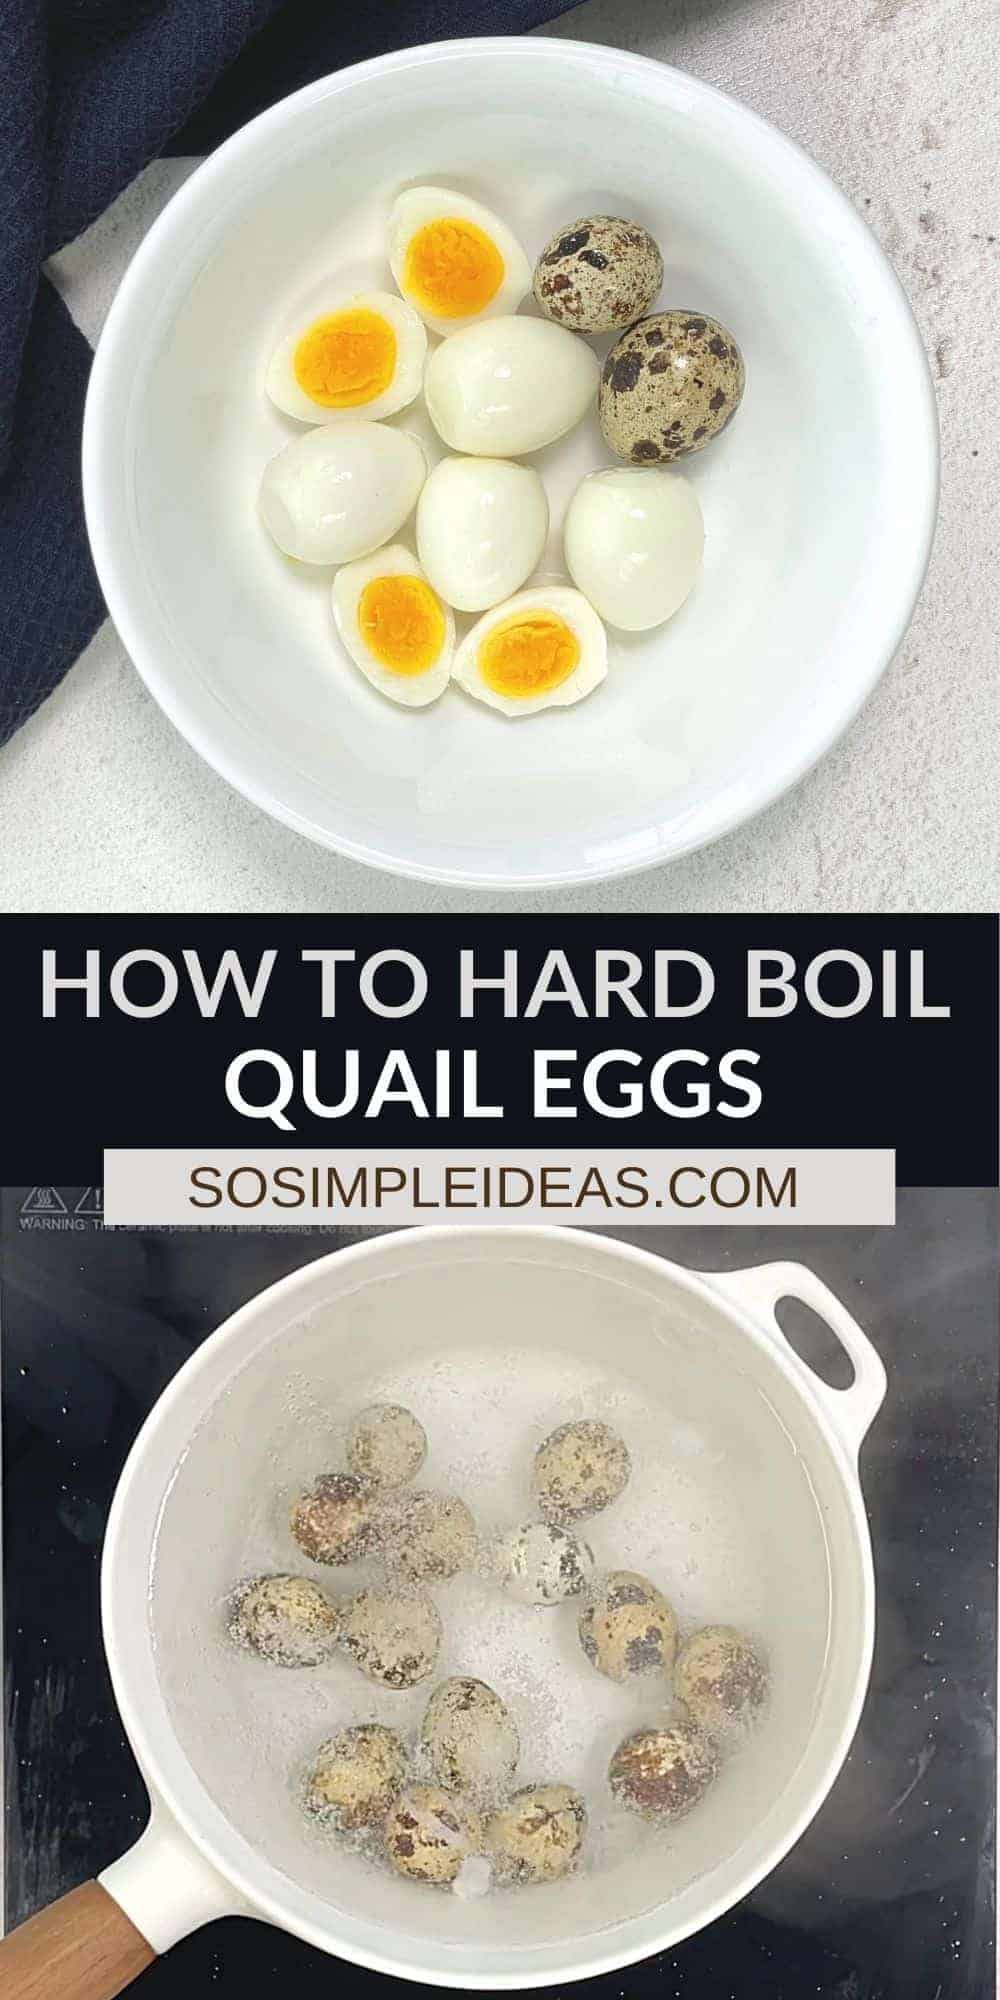 how to hard boil quail eggs pinterest image.